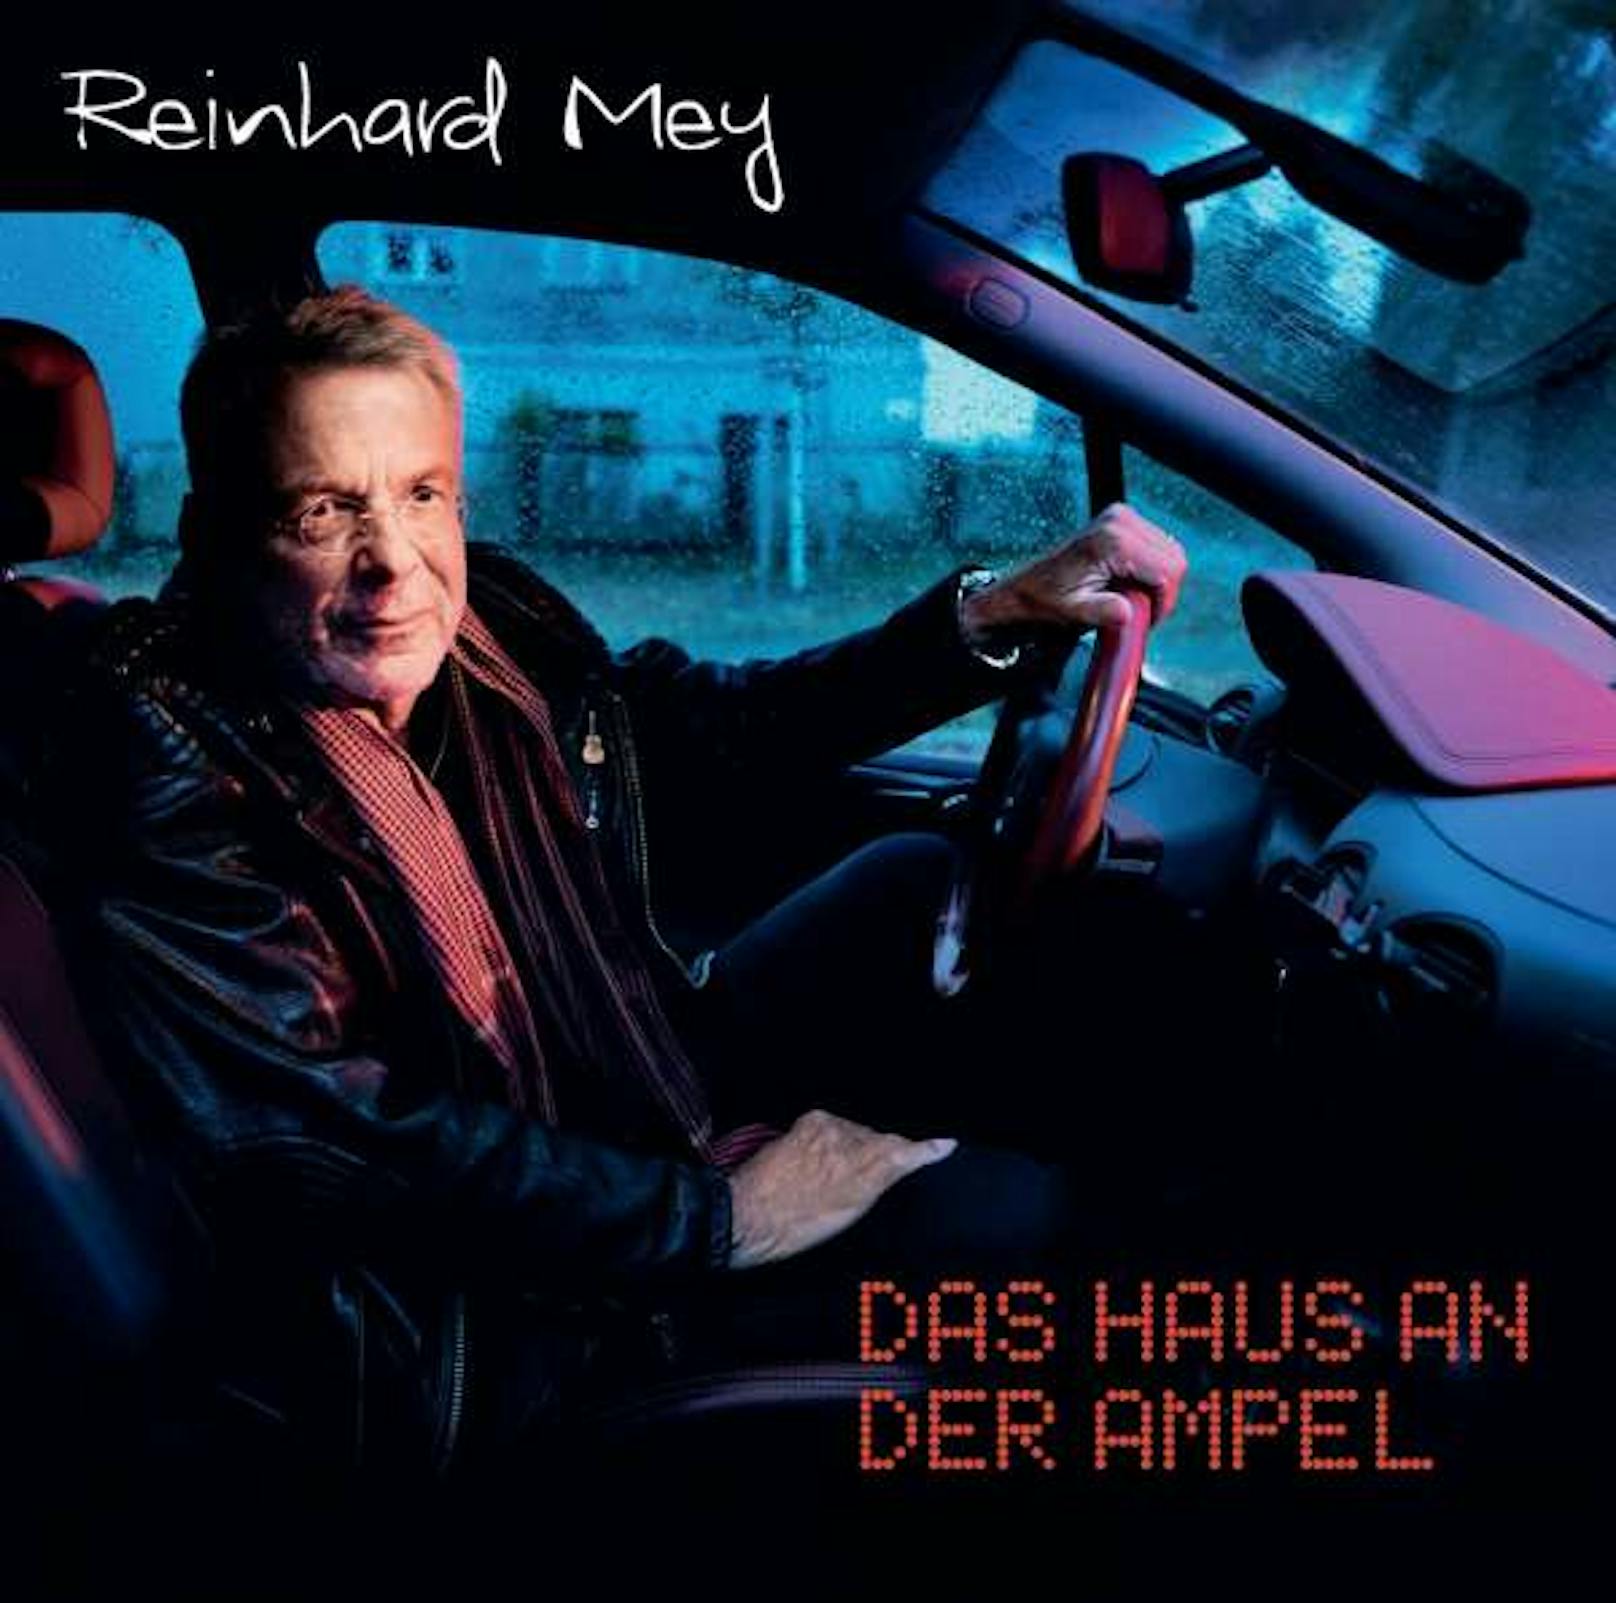 Reinhard Meys neues Album "Das Haus an der Ampel" ist bei Amazon nur mit Verspätung erhältlich